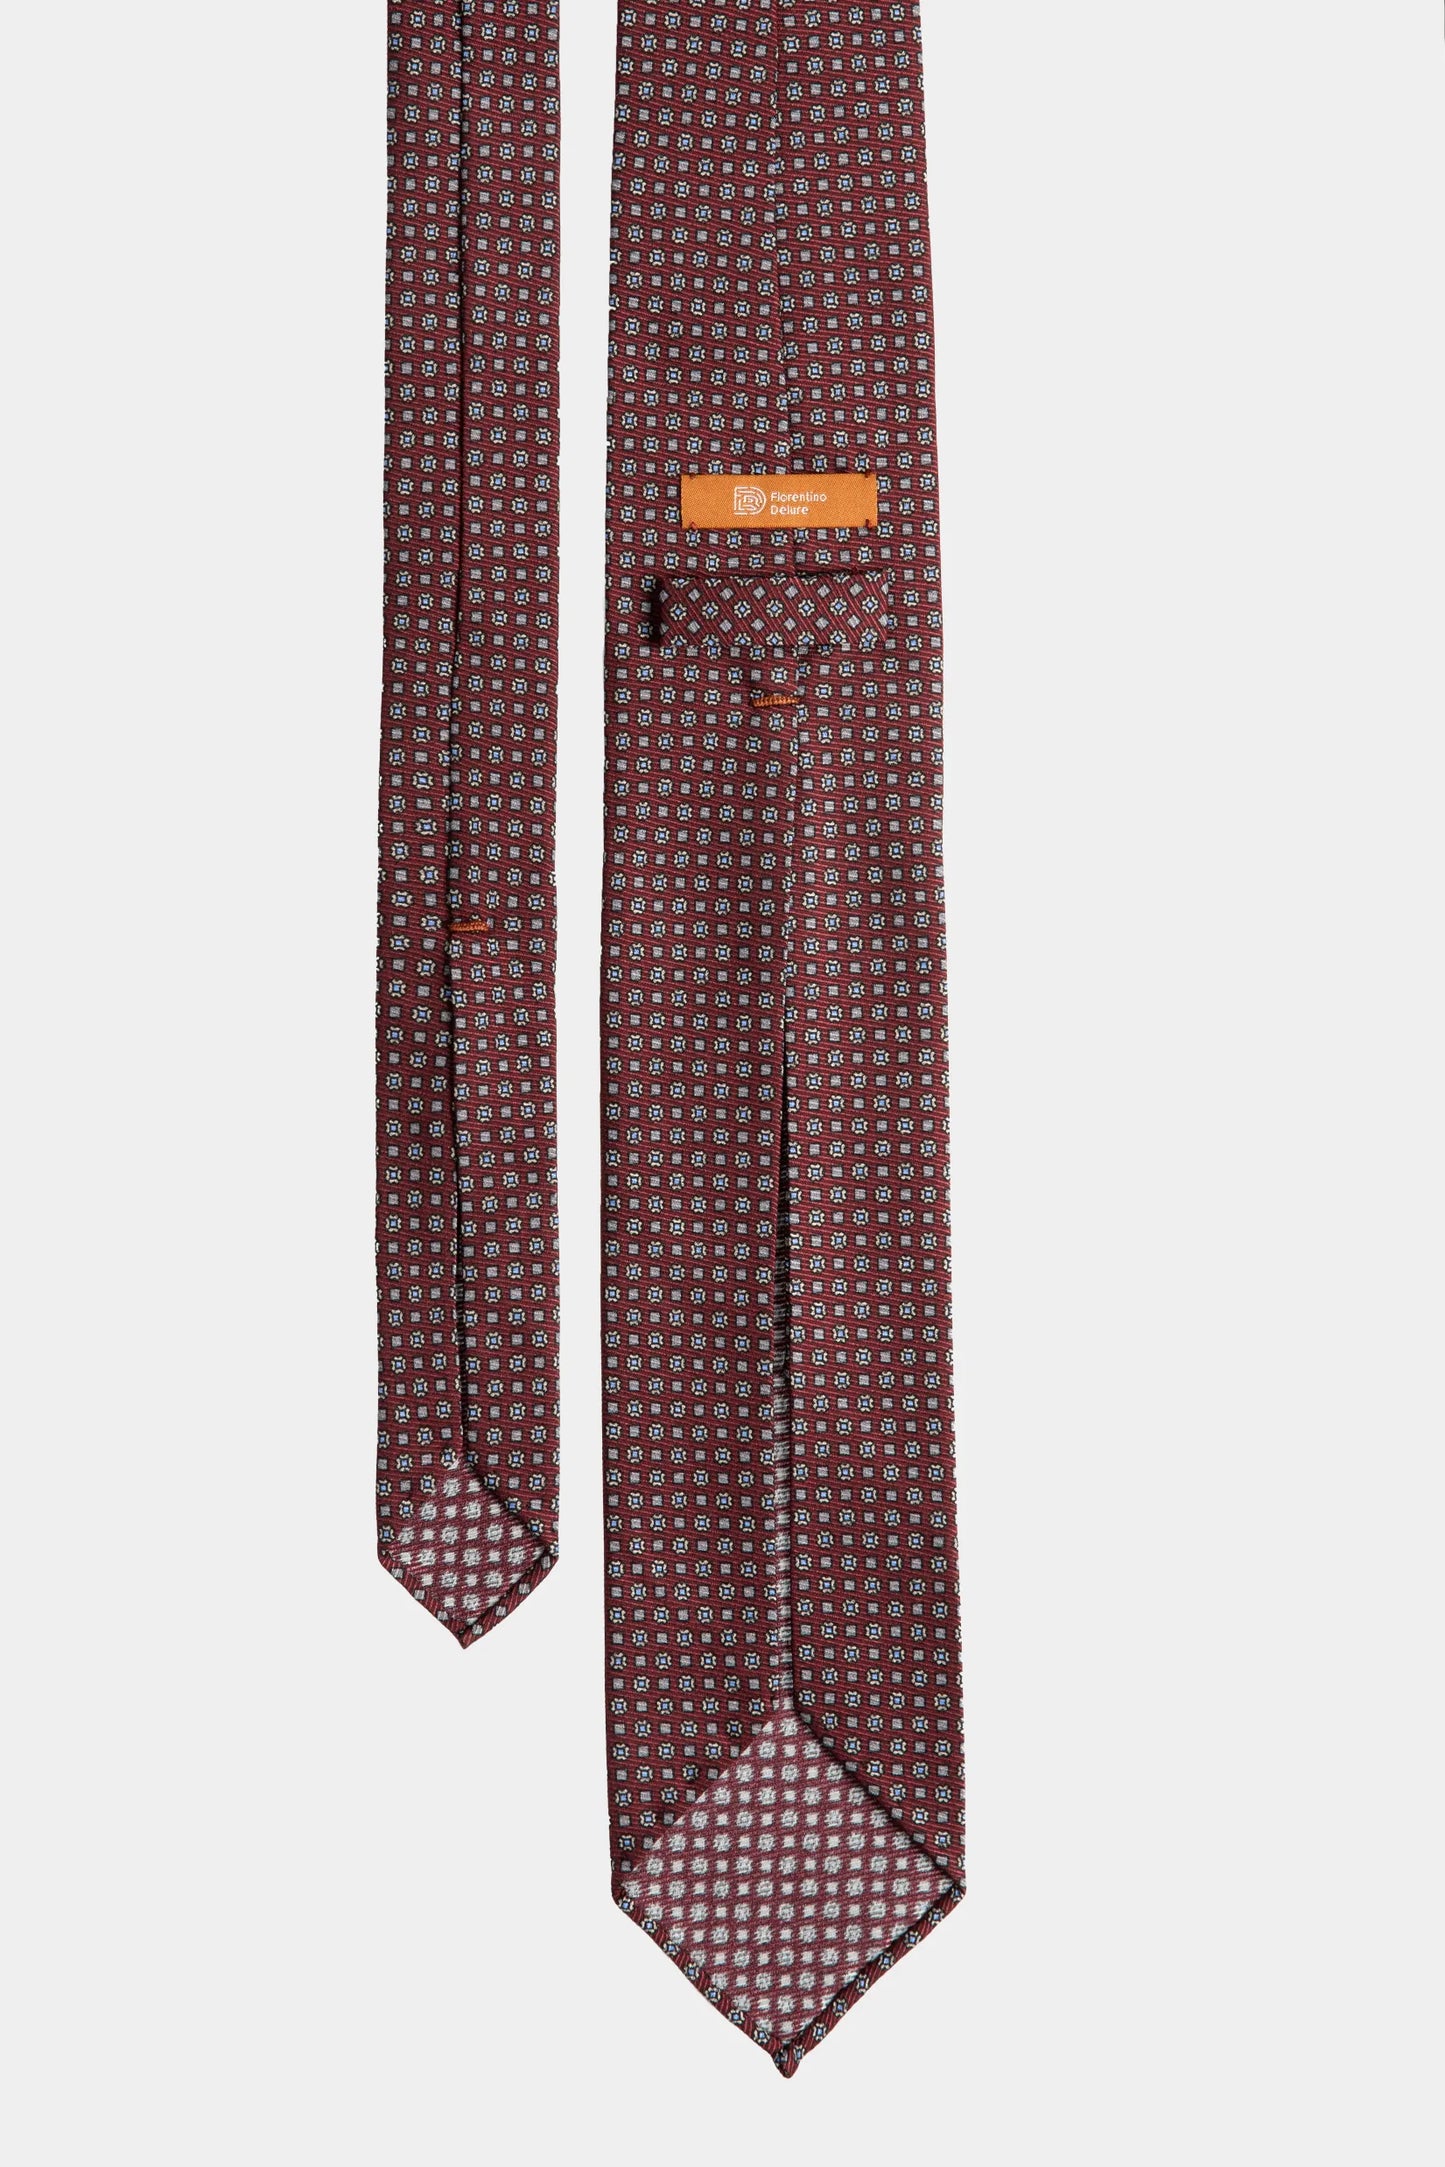 Bordeaux Paisley 7-Fold Tie